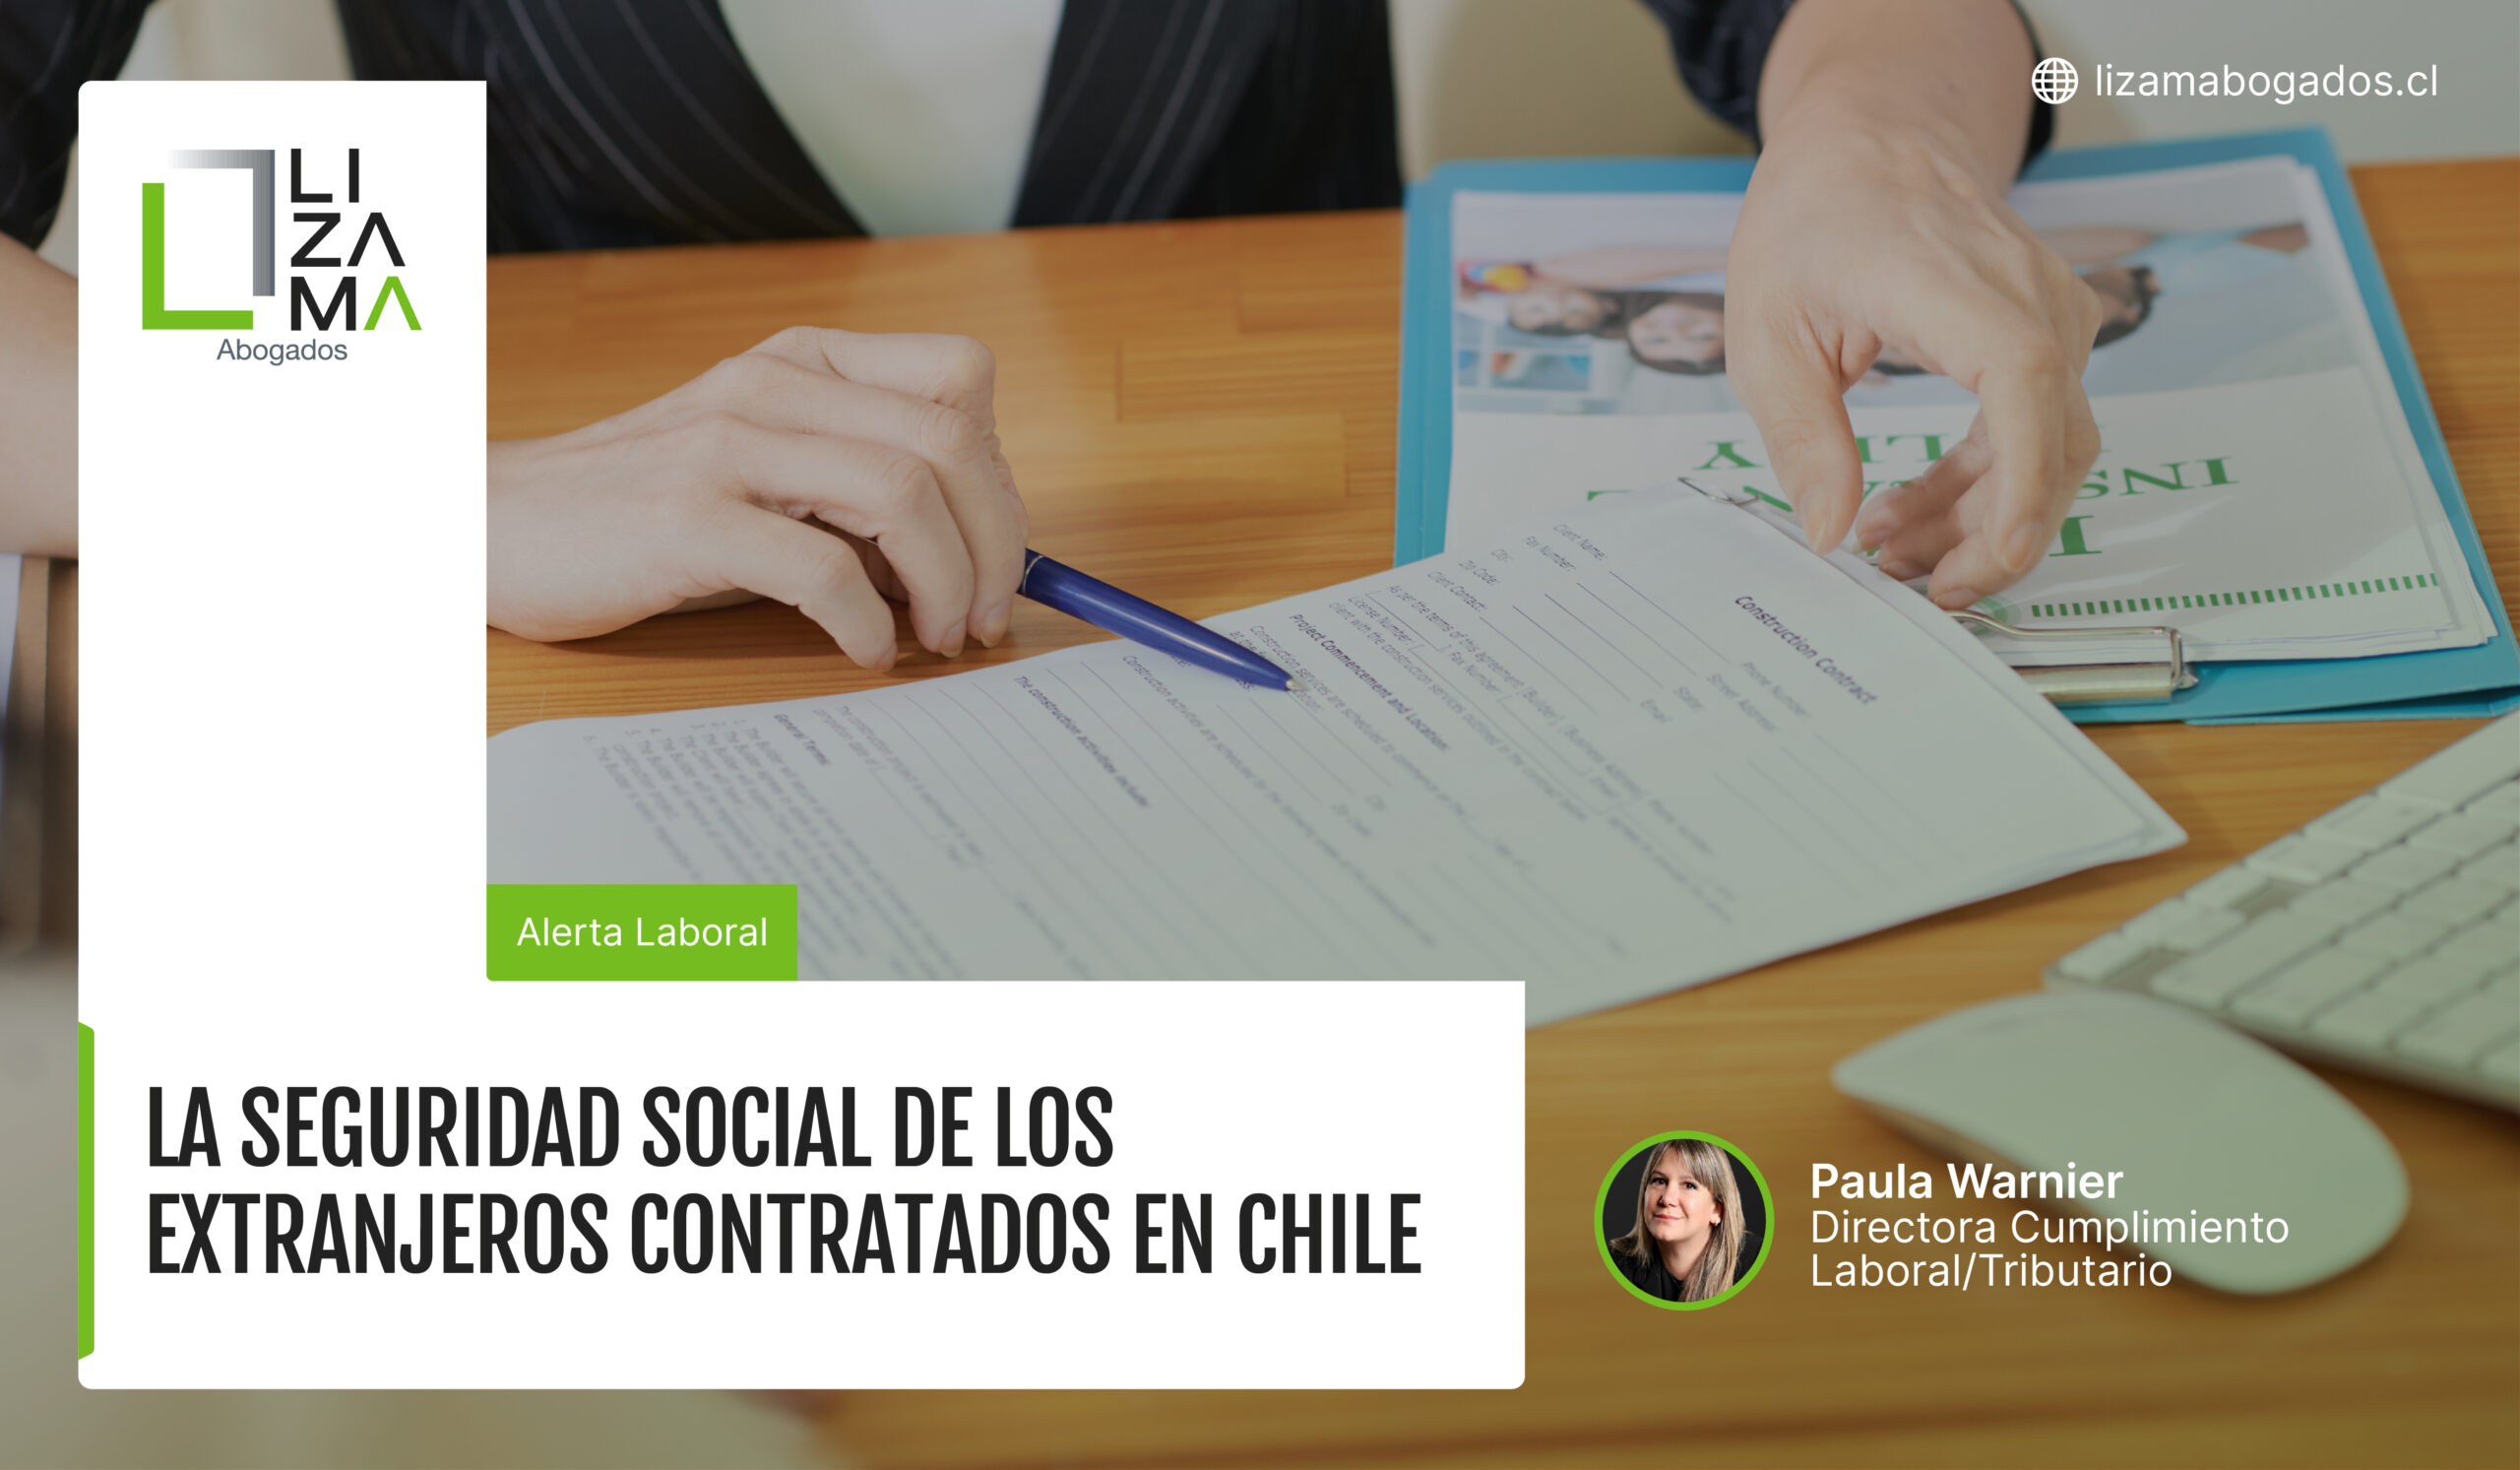 La seguridad social de los extranjeros contratados en Chile